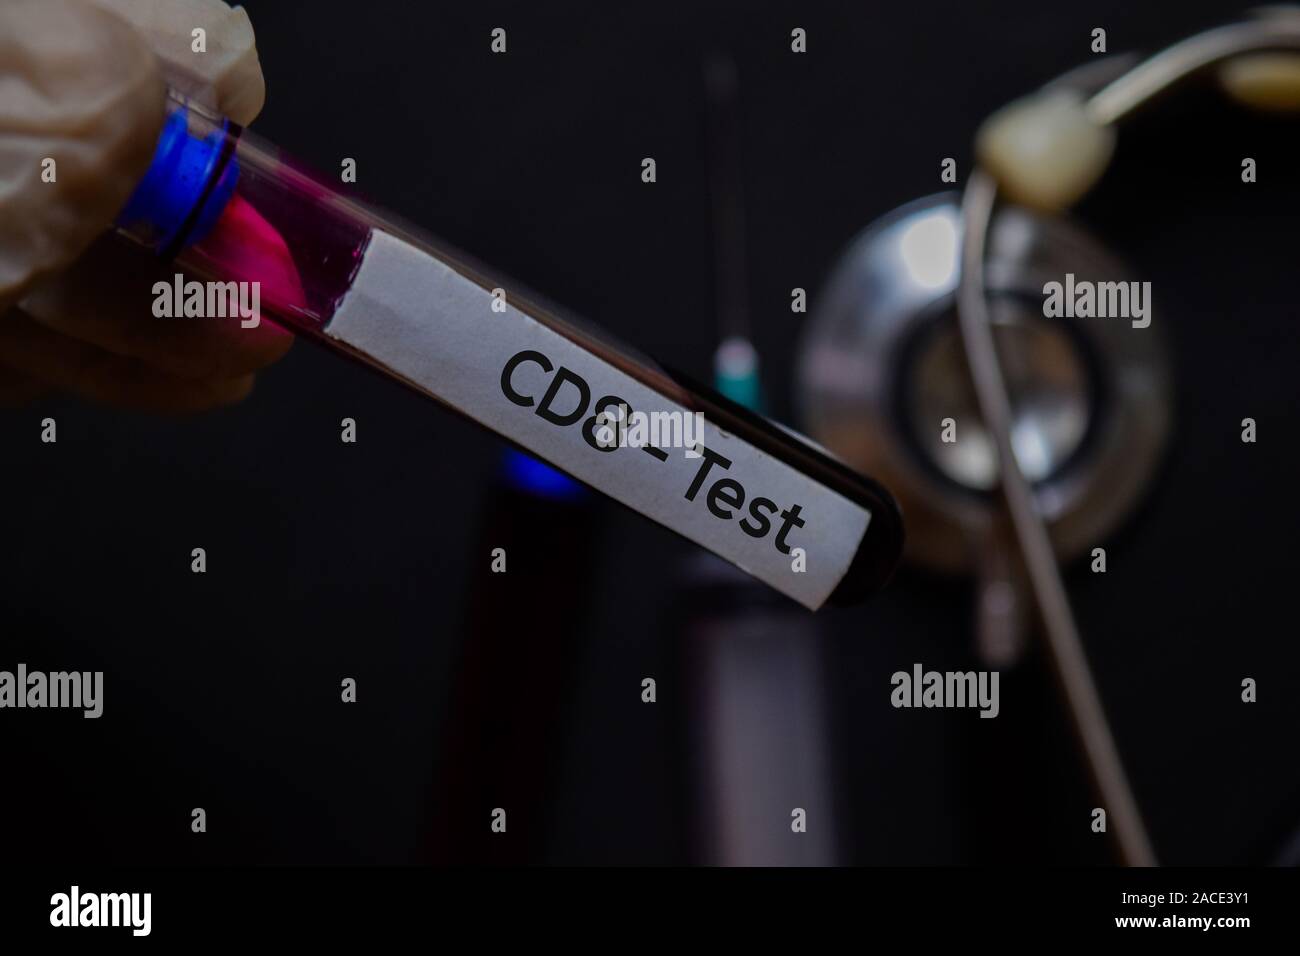 CD8 - texto de prueba con una muestra de sangre. Vista superior aislado sobre fondo negro. Concepto médico/sanitario Foto de stock